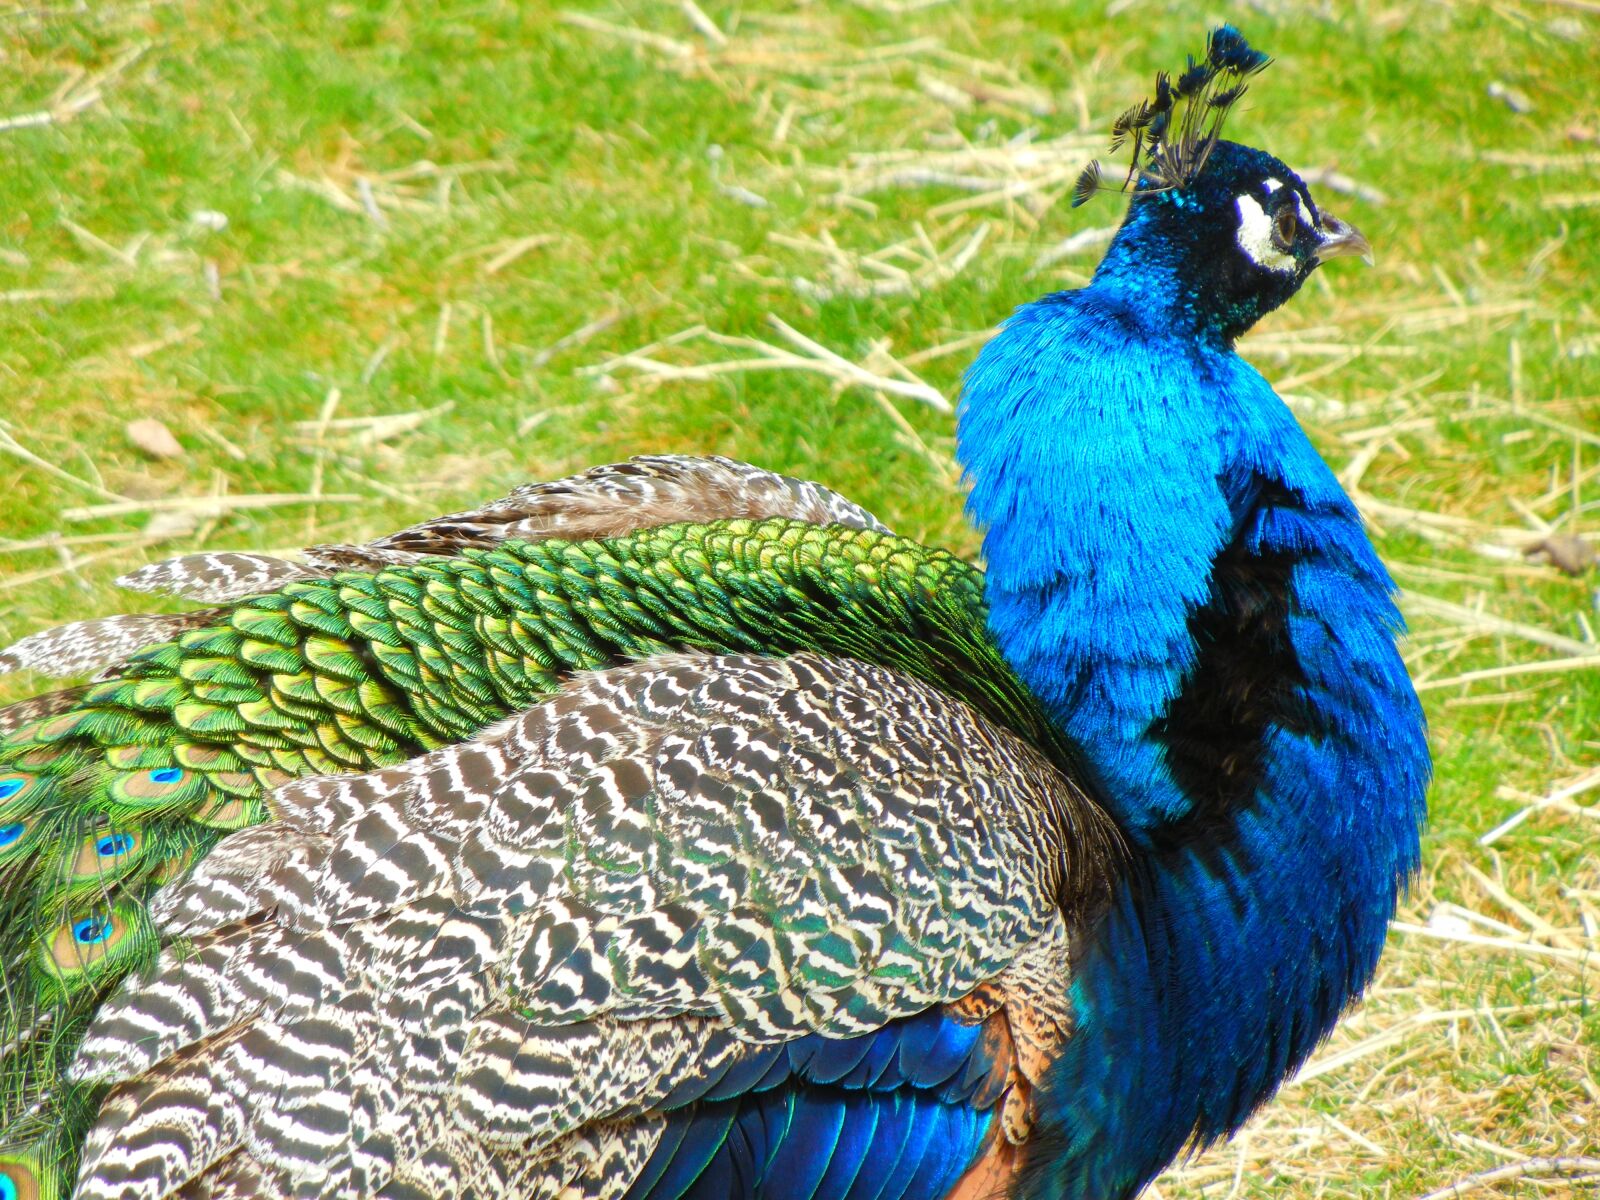 Nikon Coolpix S8100 sample photo. Birds, peacock, zoo photography